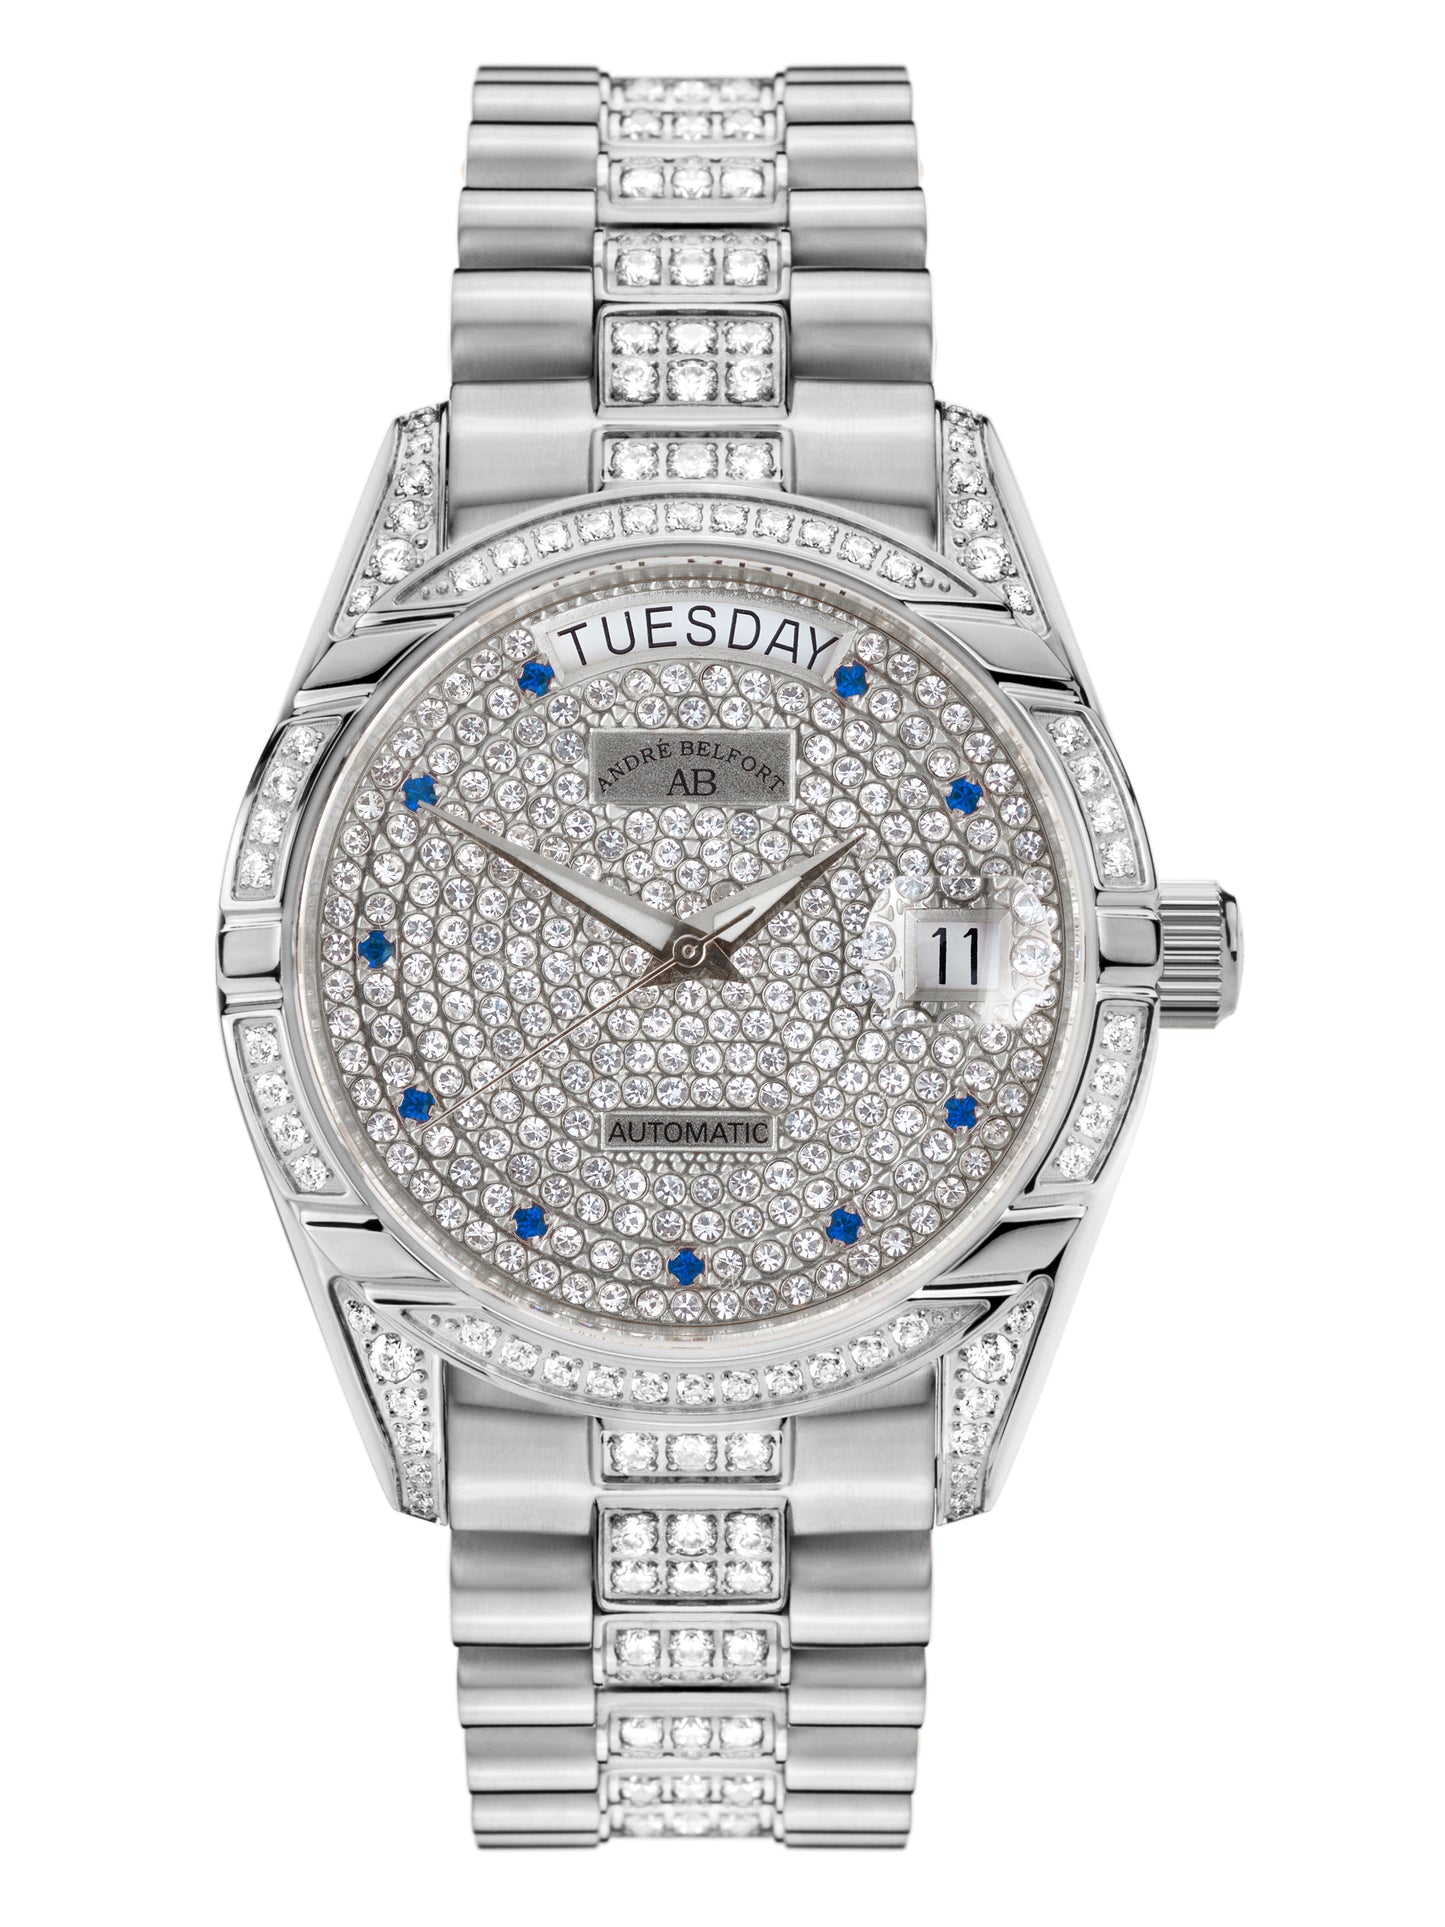 Automatic watches — Comète III — André Belfort — steel